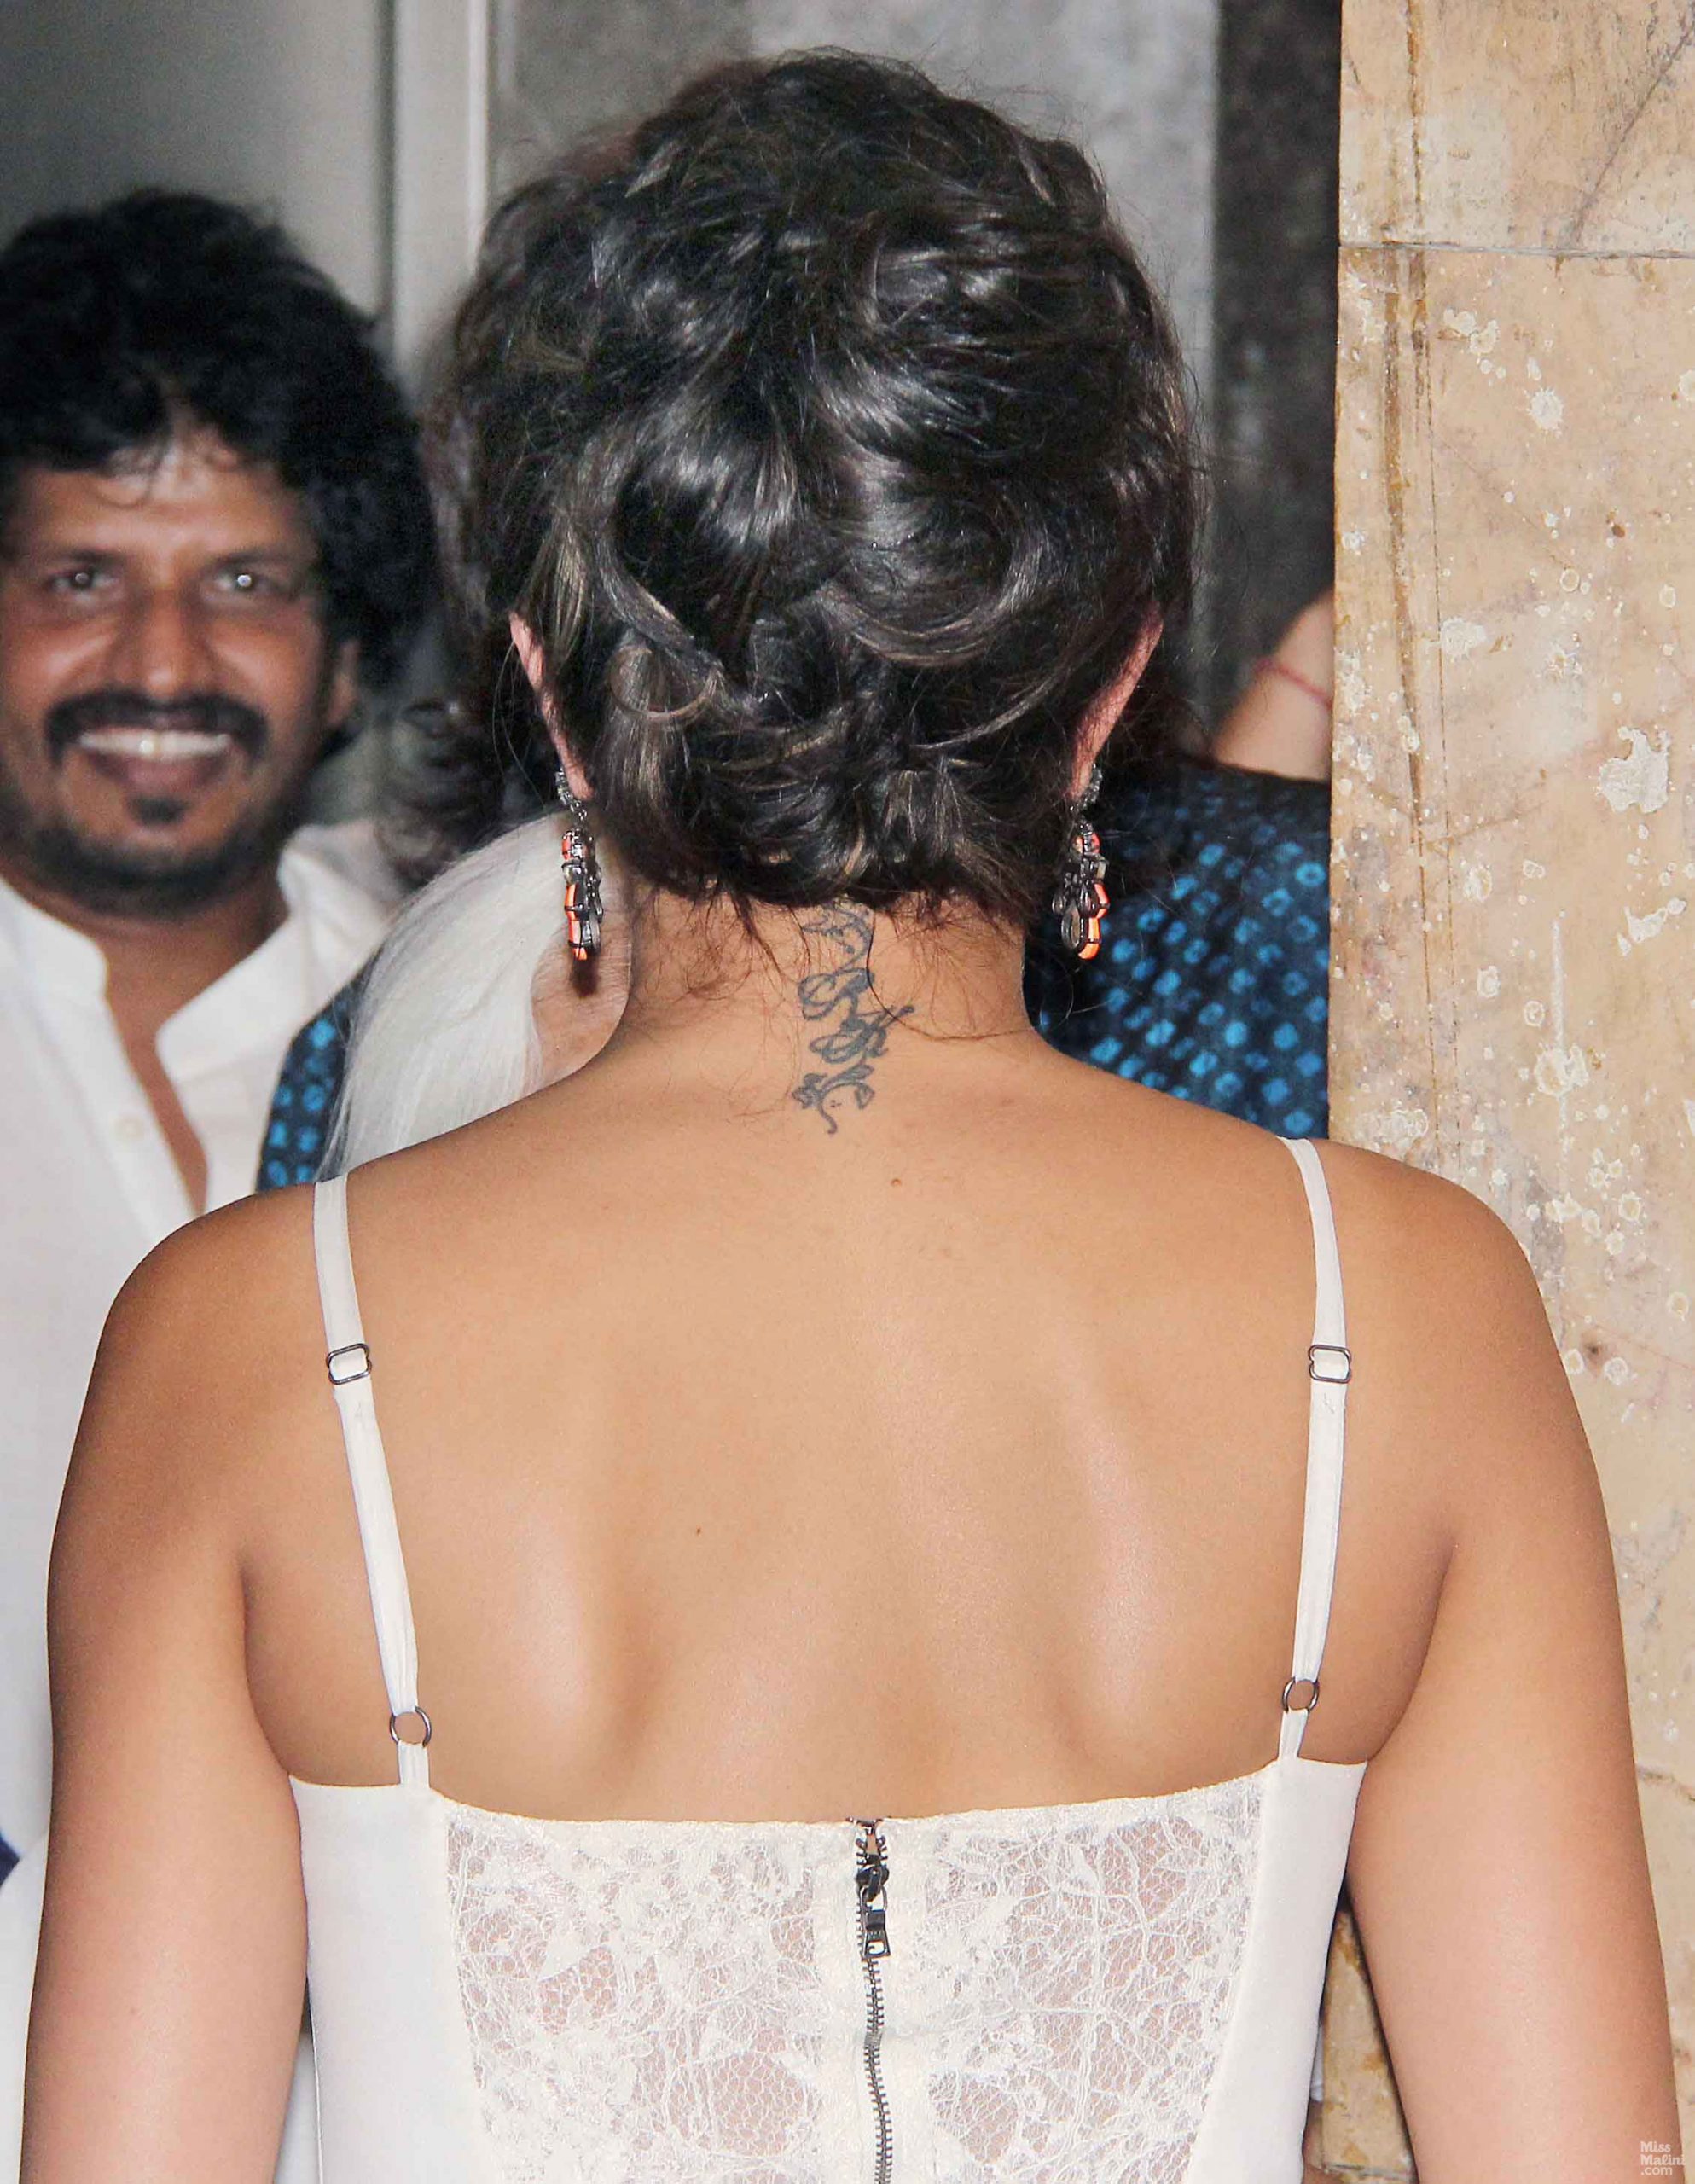 Deepika Padukone Finally Reveals What Happened to Her 'RK Tattoo' - News18